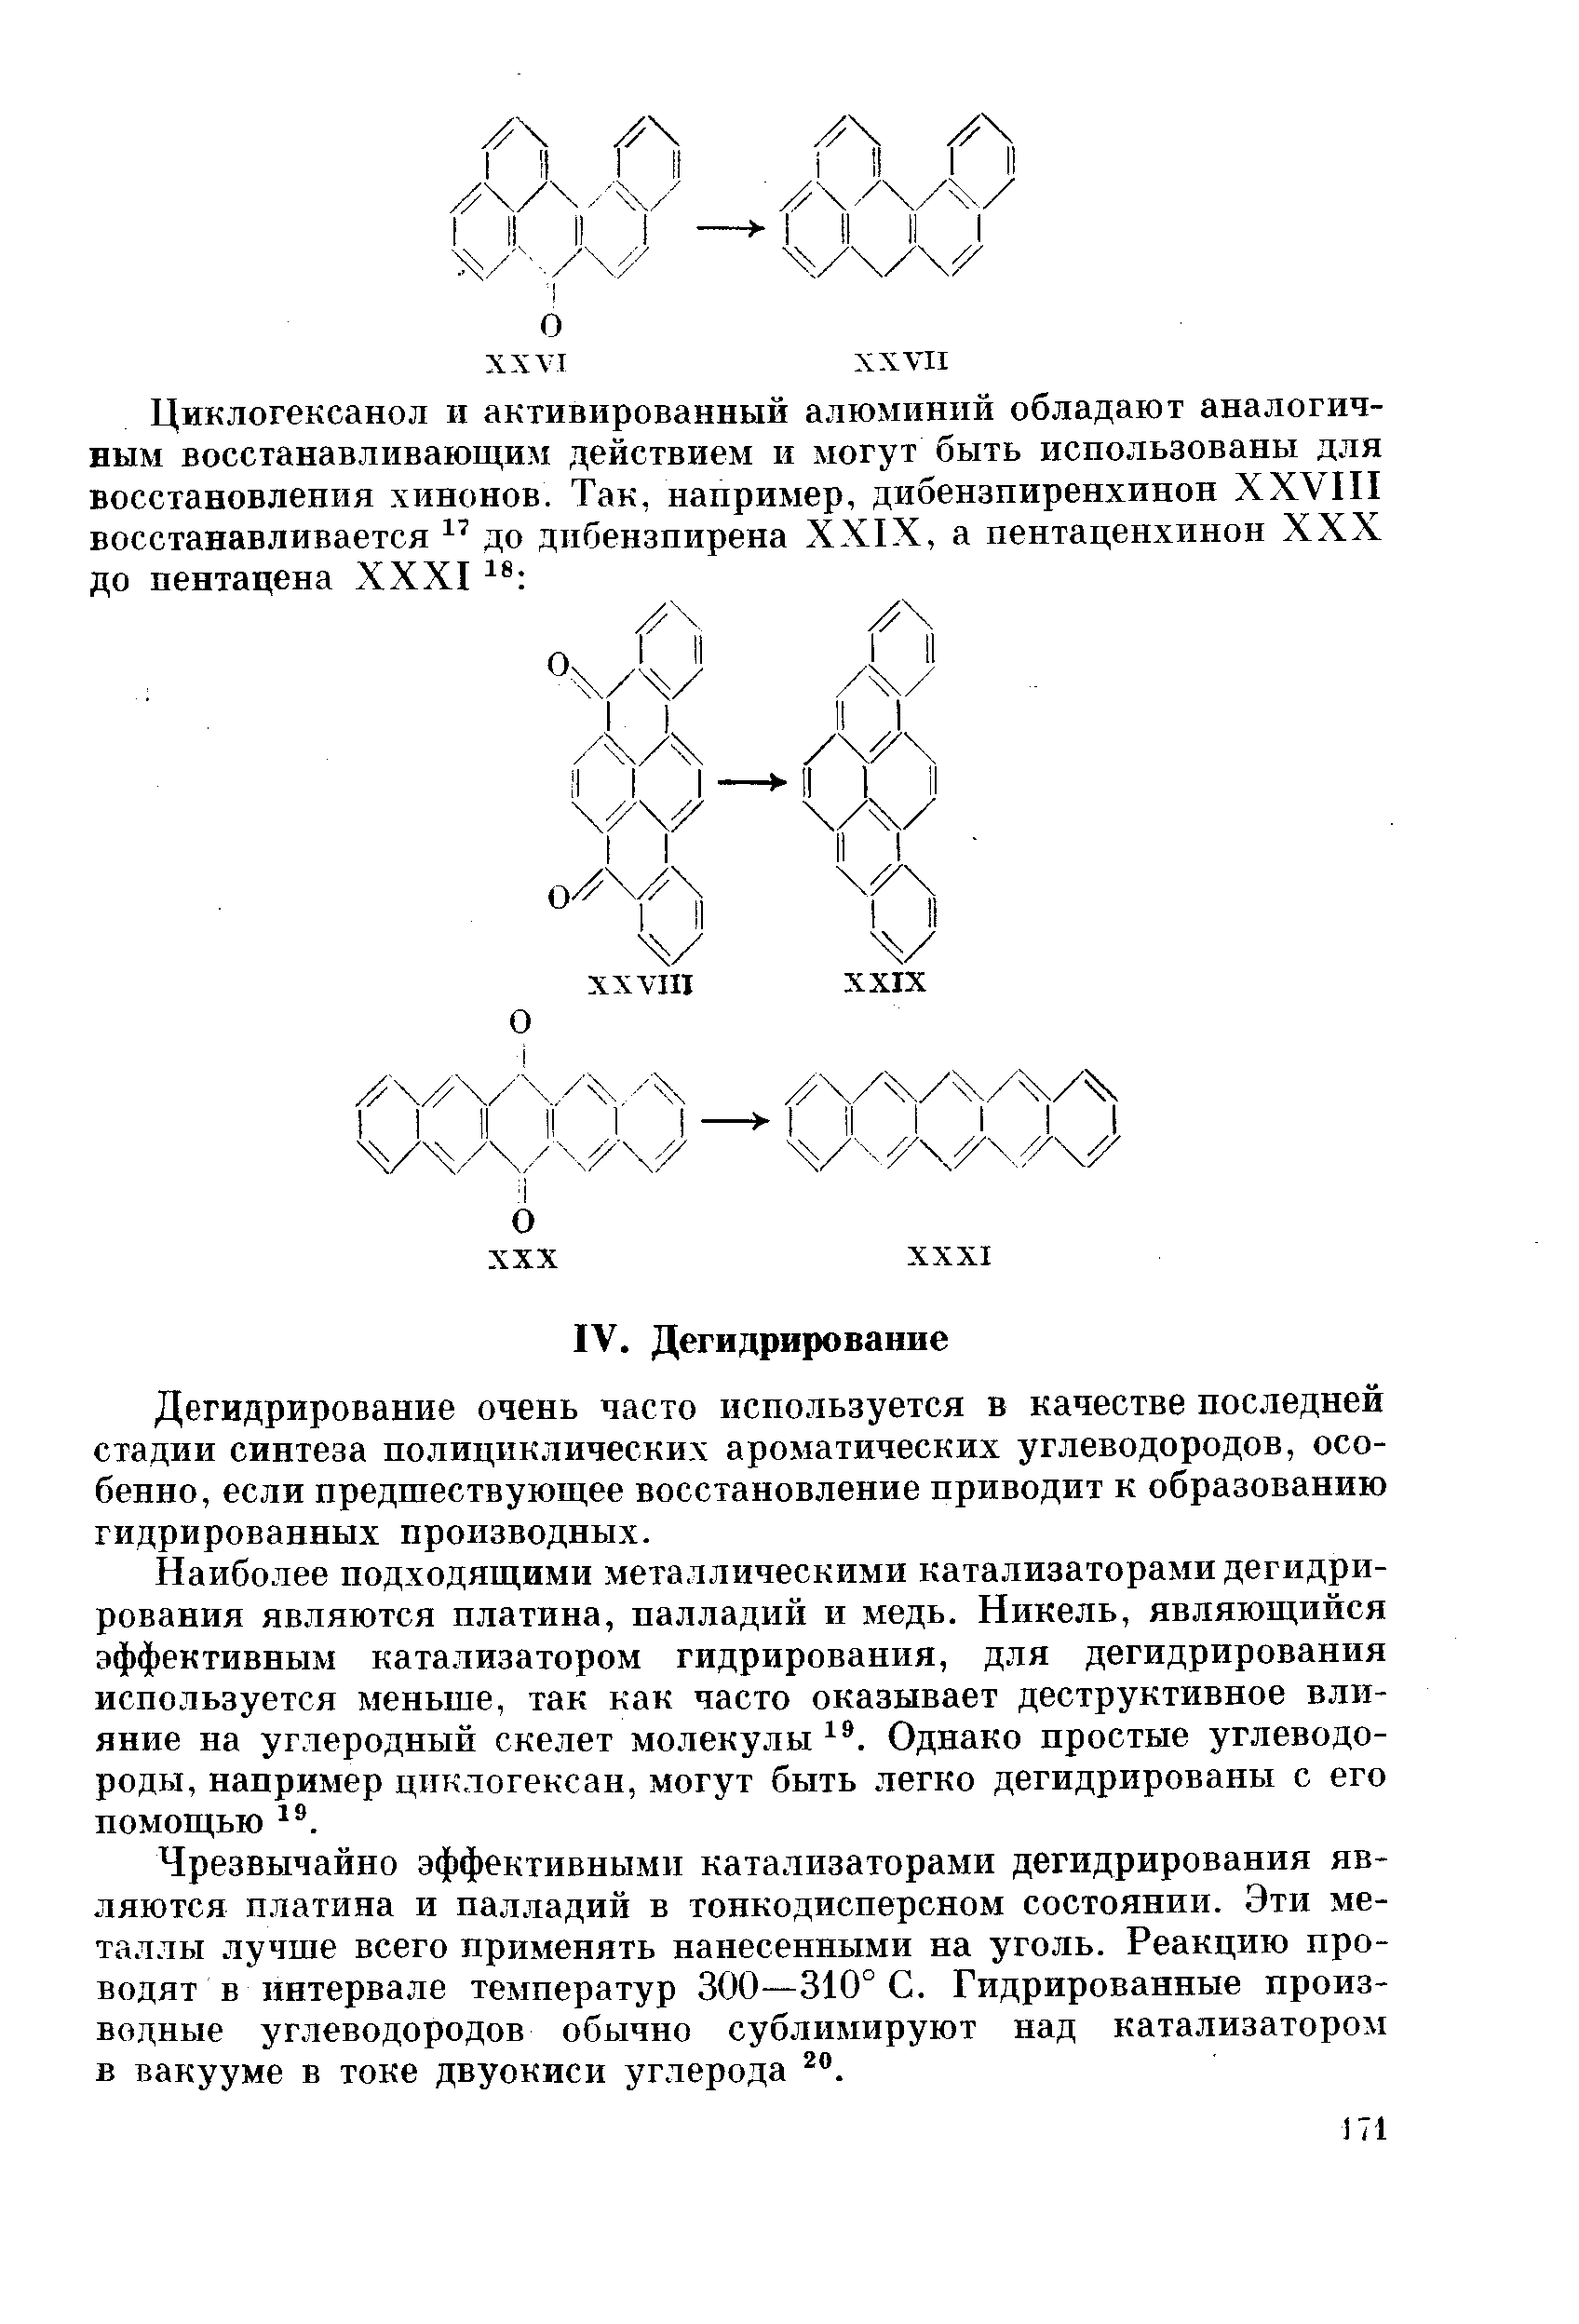 Дегидрирование очень часто используется в качестве последней стадии синтеза полициклических ароматических углеводородов, особенно, если предшествующее восстановление приводит к образованию гидрированных производных.